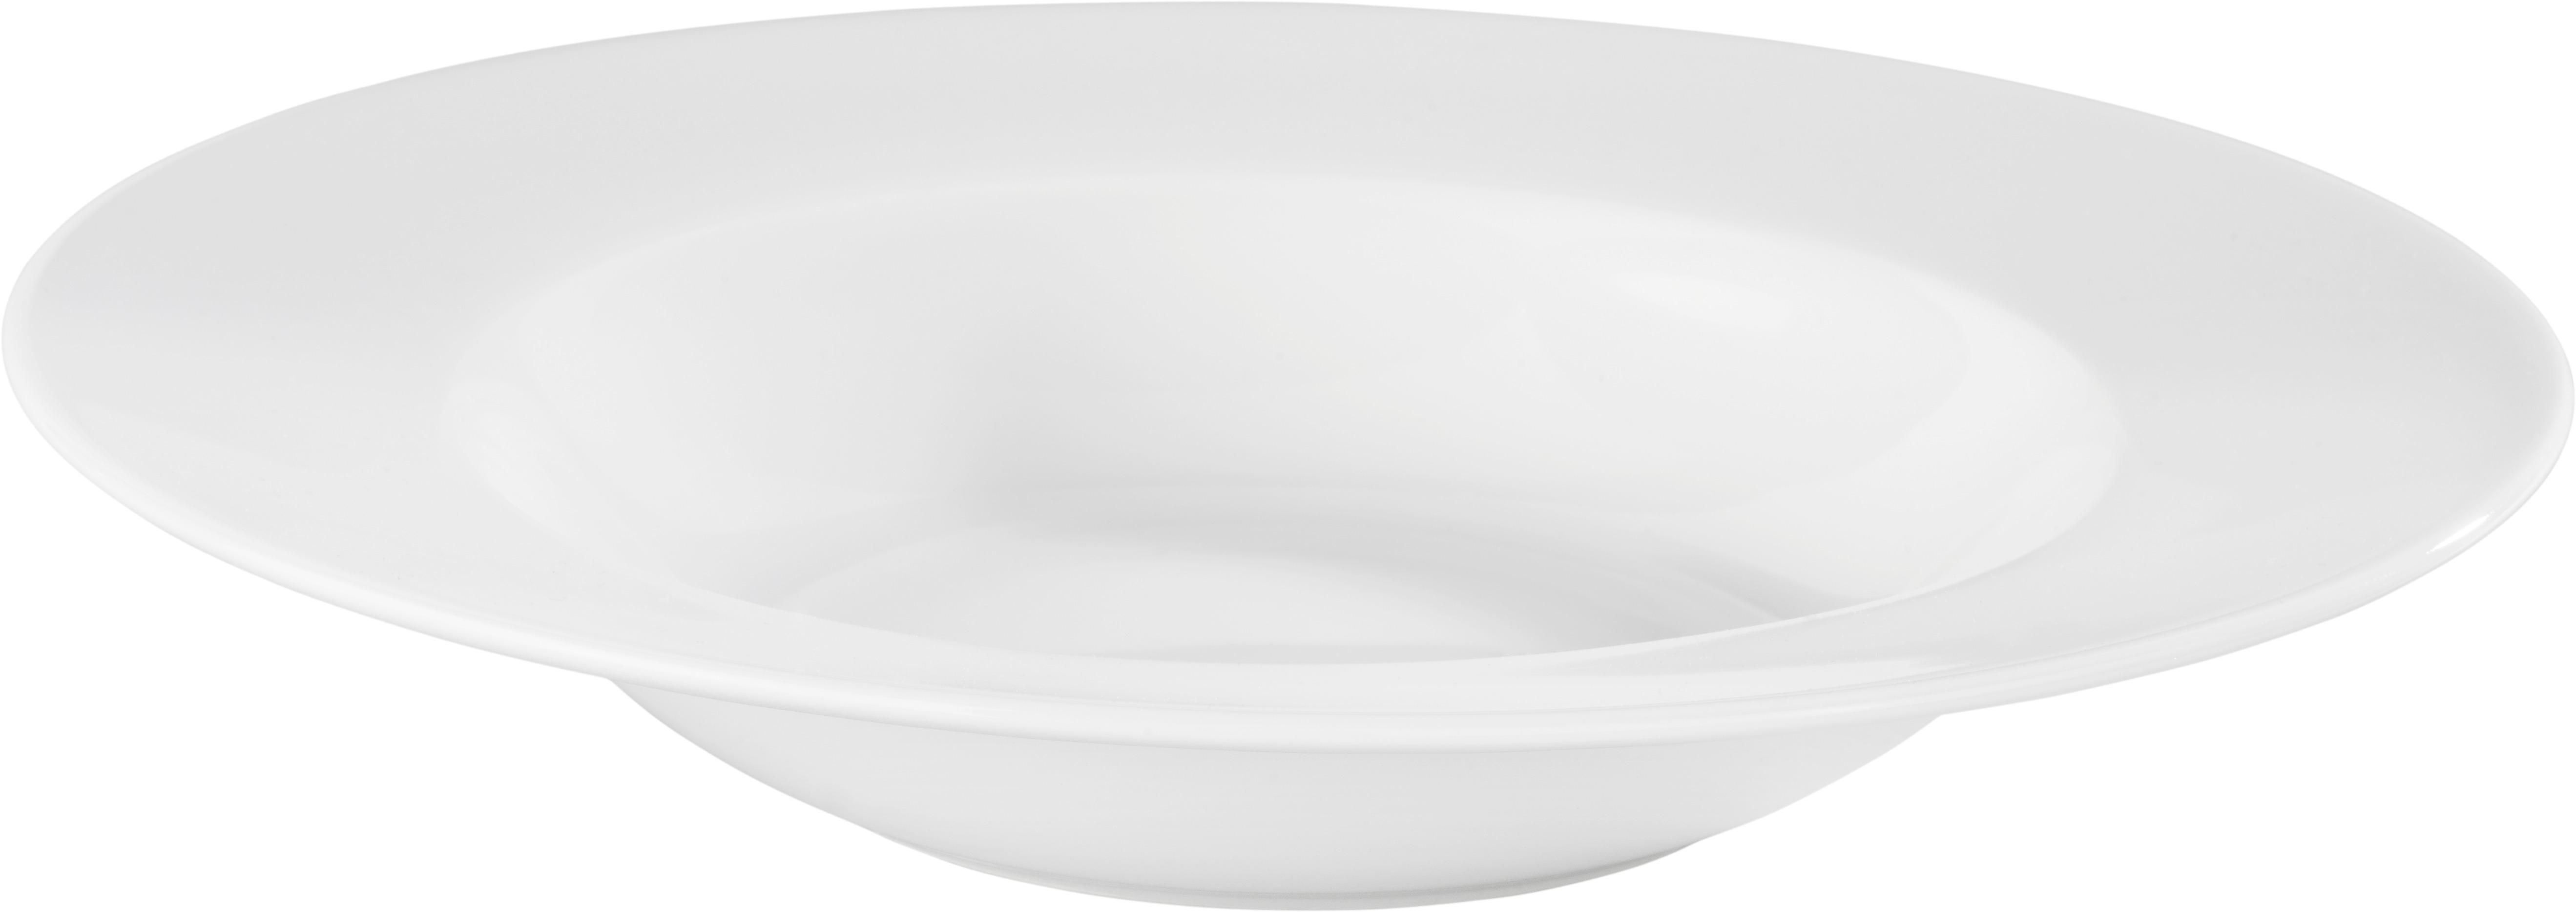 Suppenteller Adria aus Keramik Ø ca. 21,5cm - Weiß, KONVENTIONELL, Keramik (21,5cm) - Modern Living